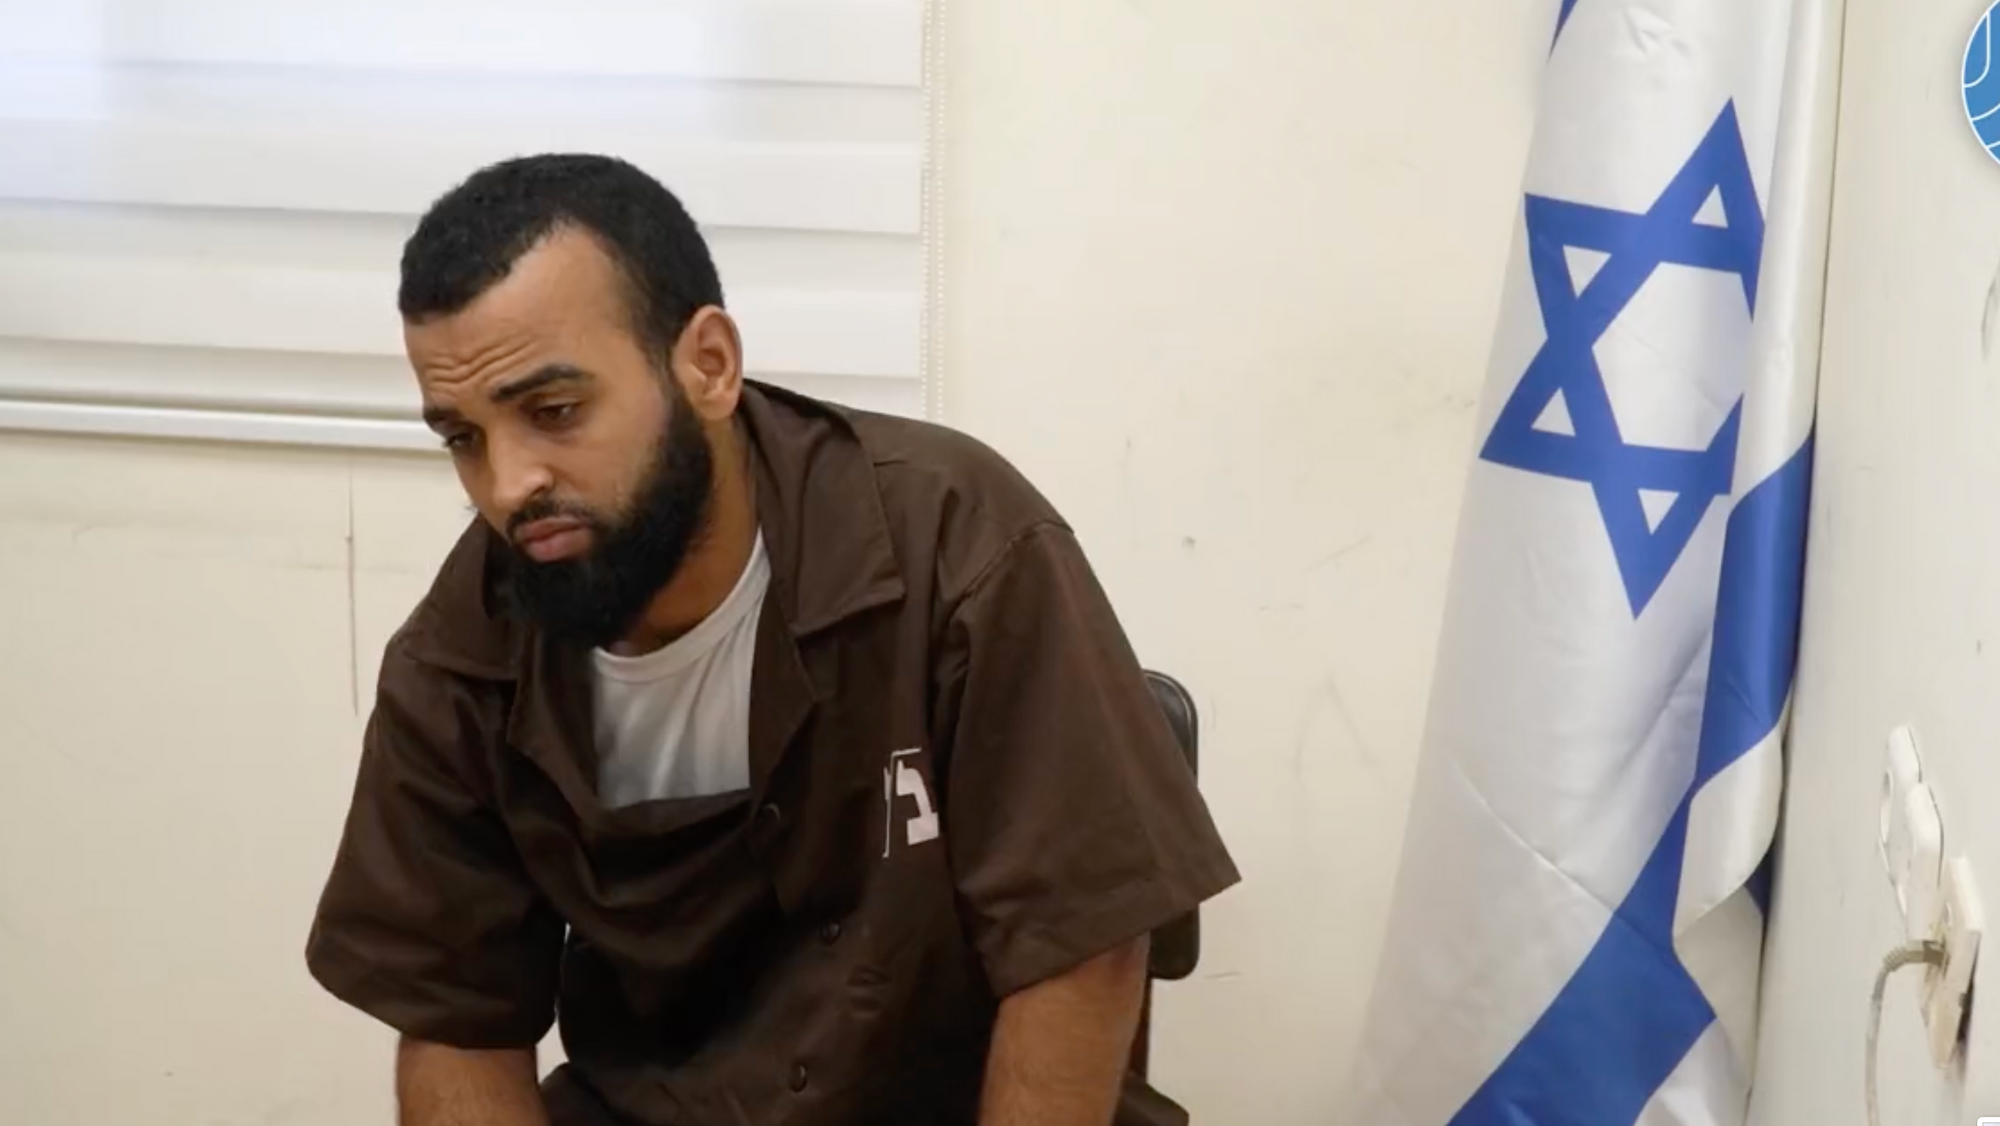 Допрос террориста крокус в больнице. Нухба ХАМАС.